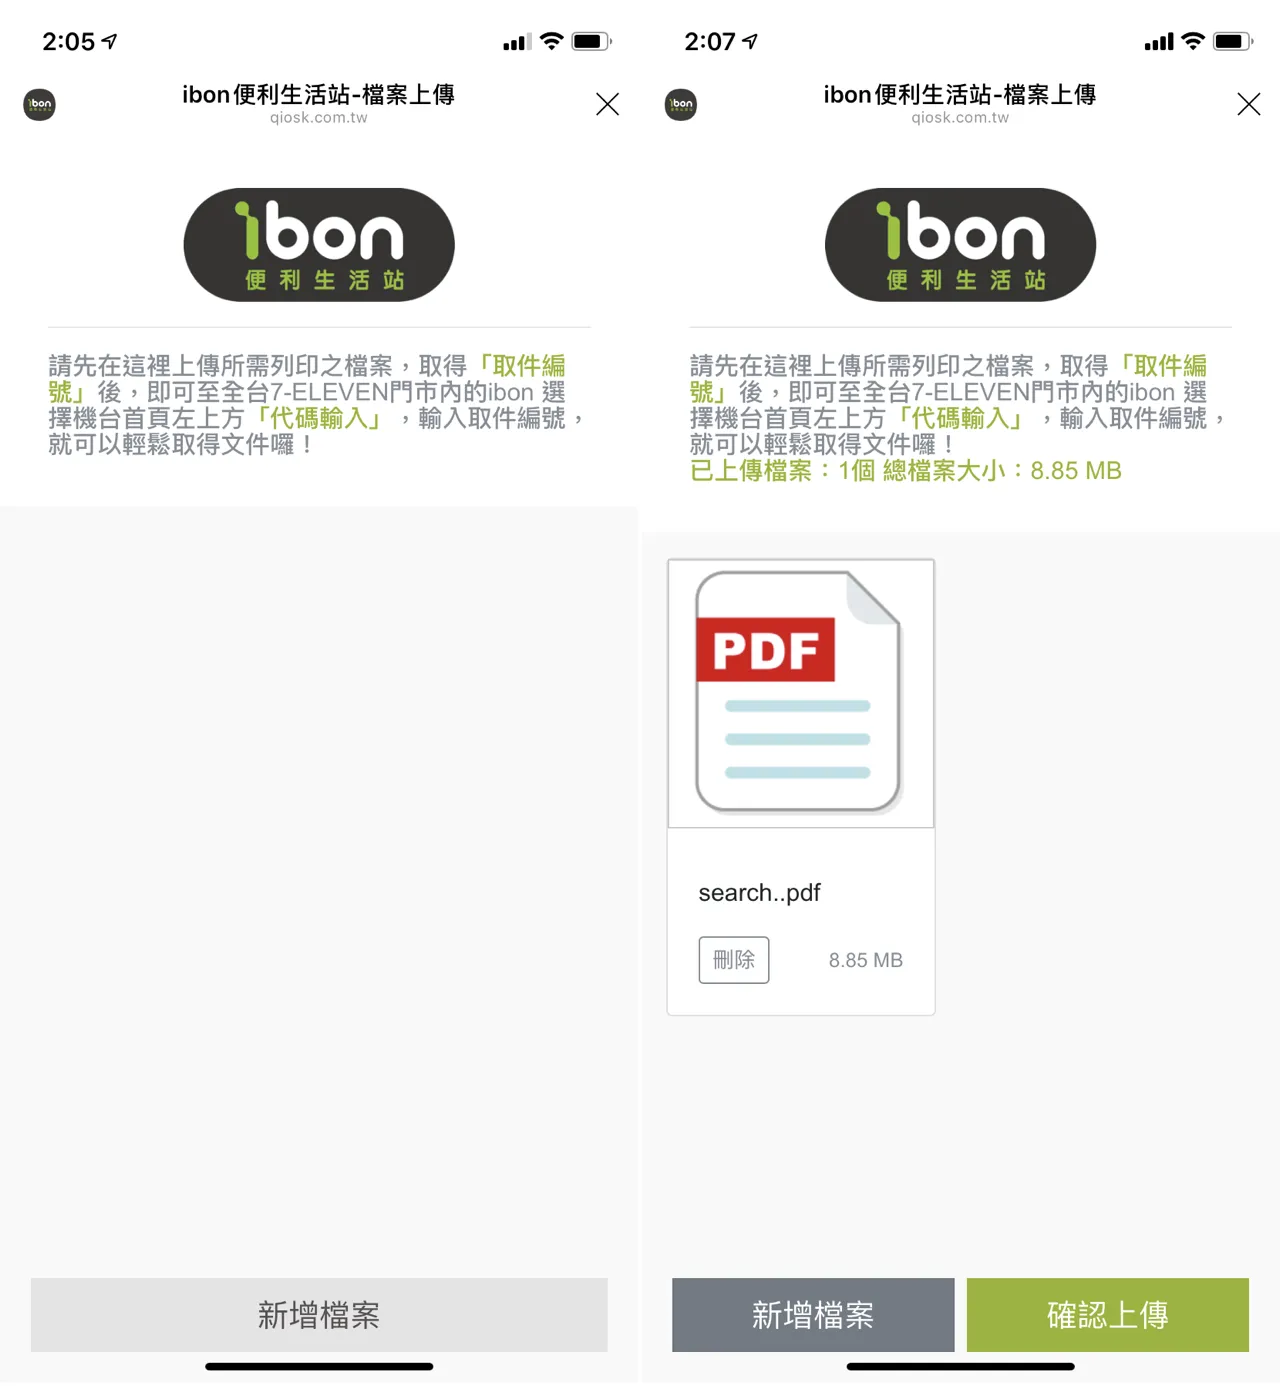 ibon 云端列印网加入 LINE 手机列印教程